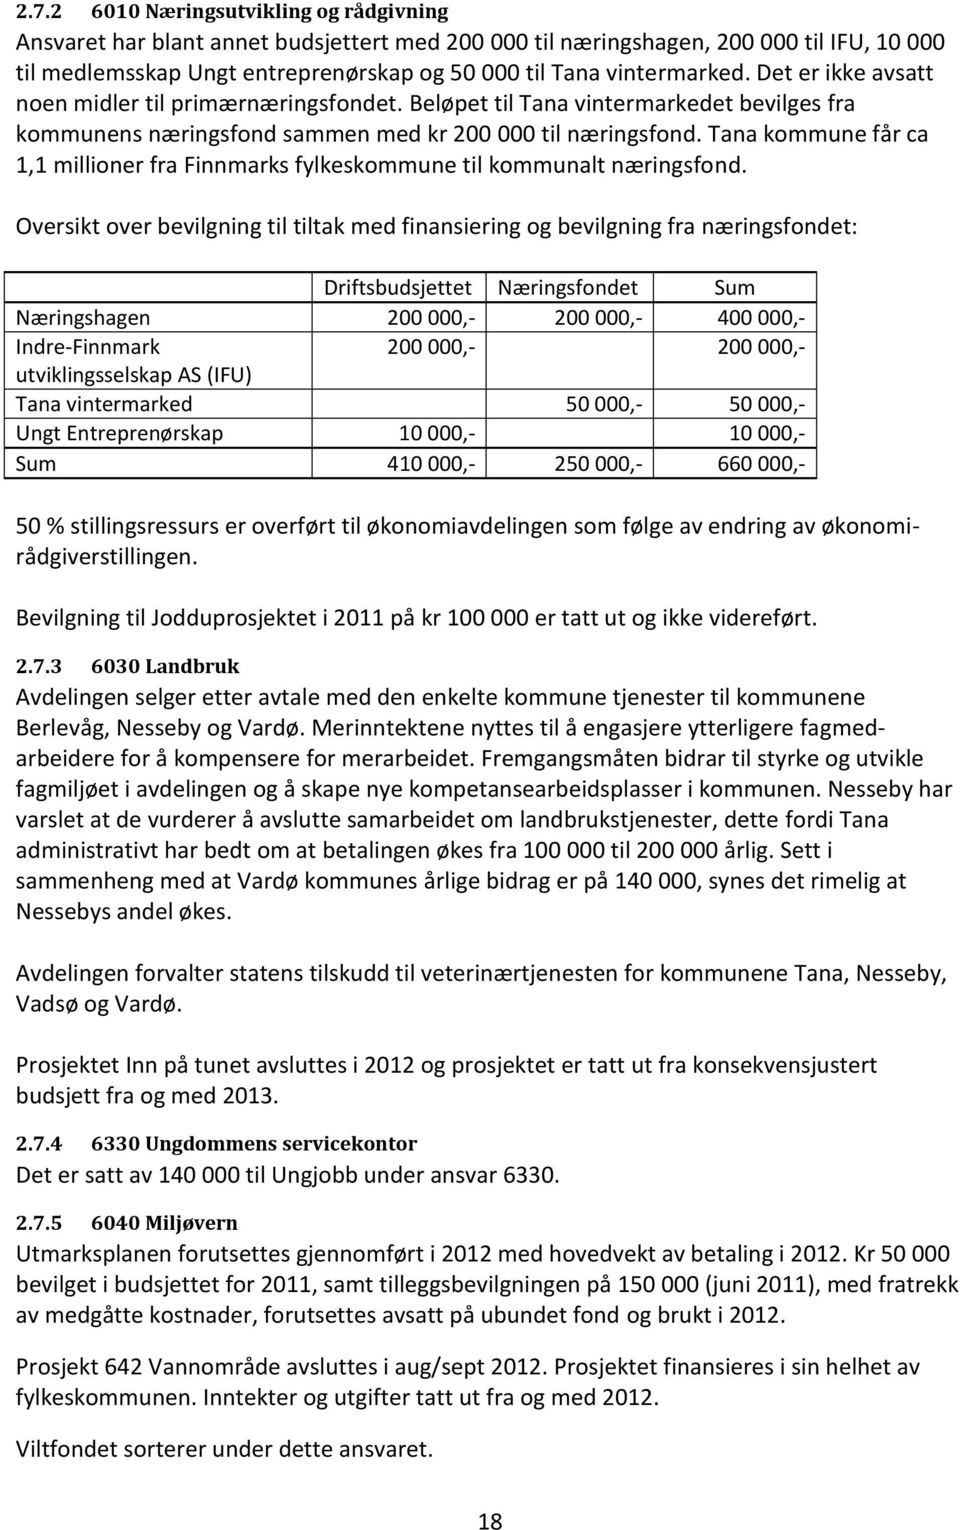 Tana kommune får ca 1,1 millioner fra Finnmarks fylkeskommune til kommunalt næringsfond.